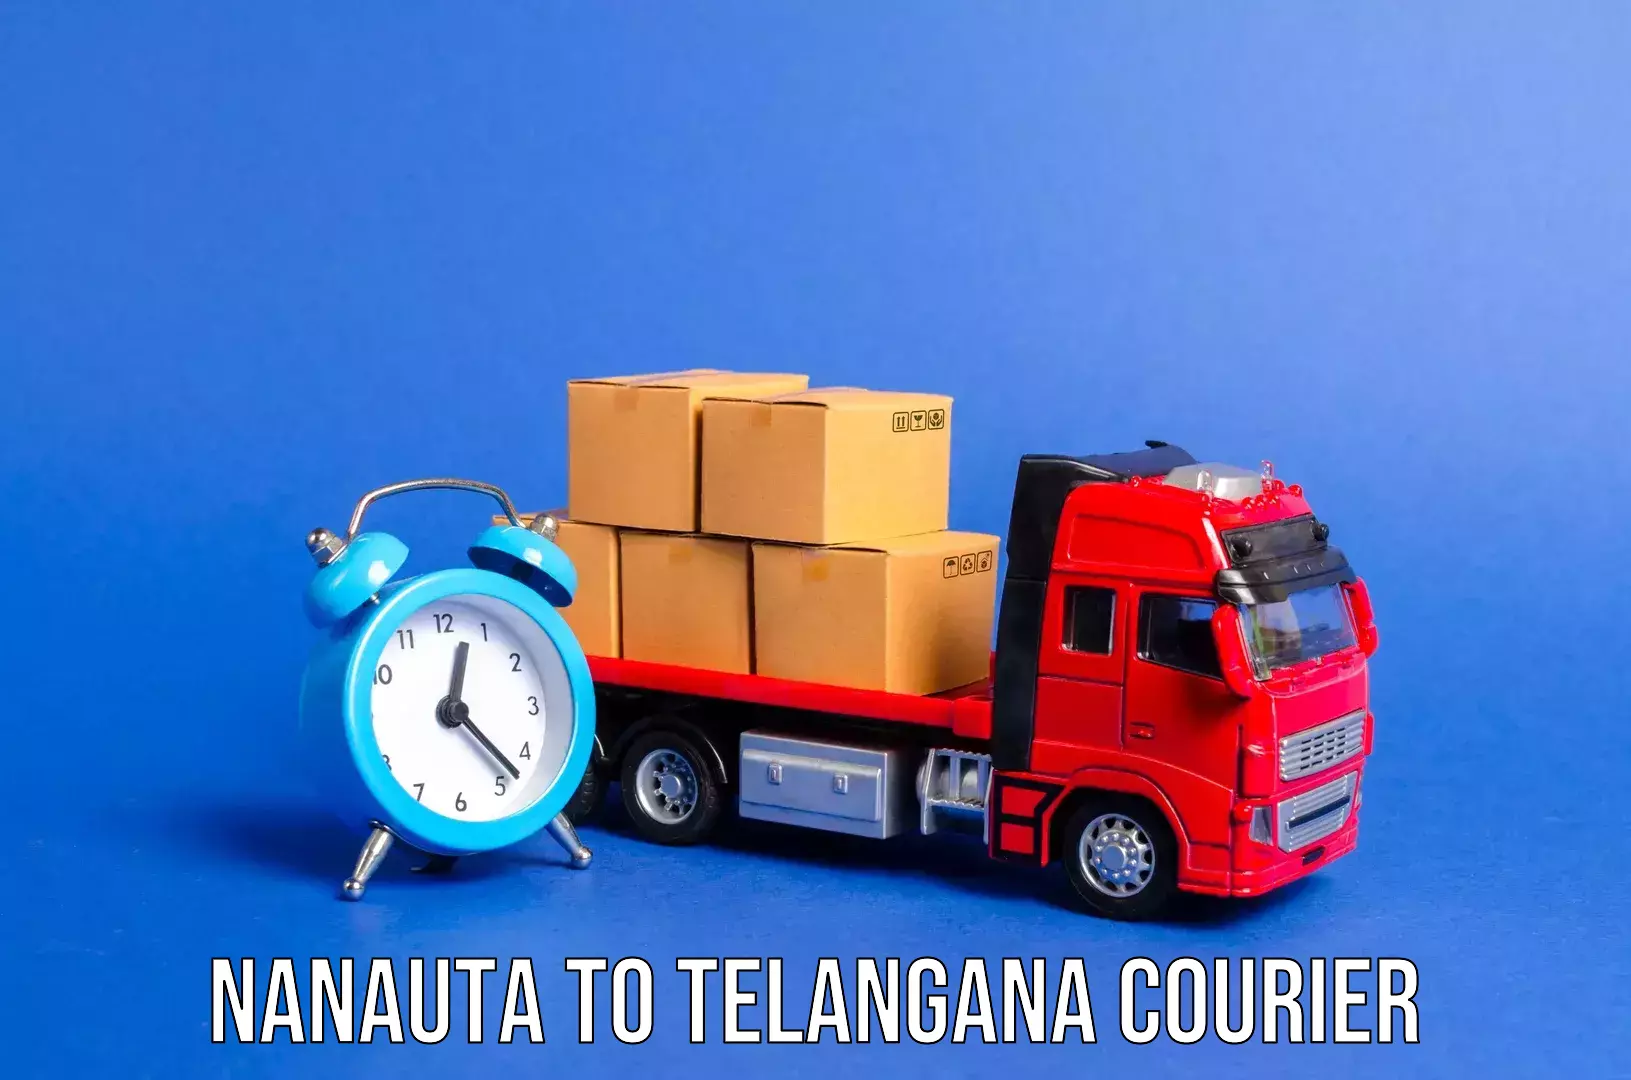 Tailored baggage transport Nanauta to Balanagar